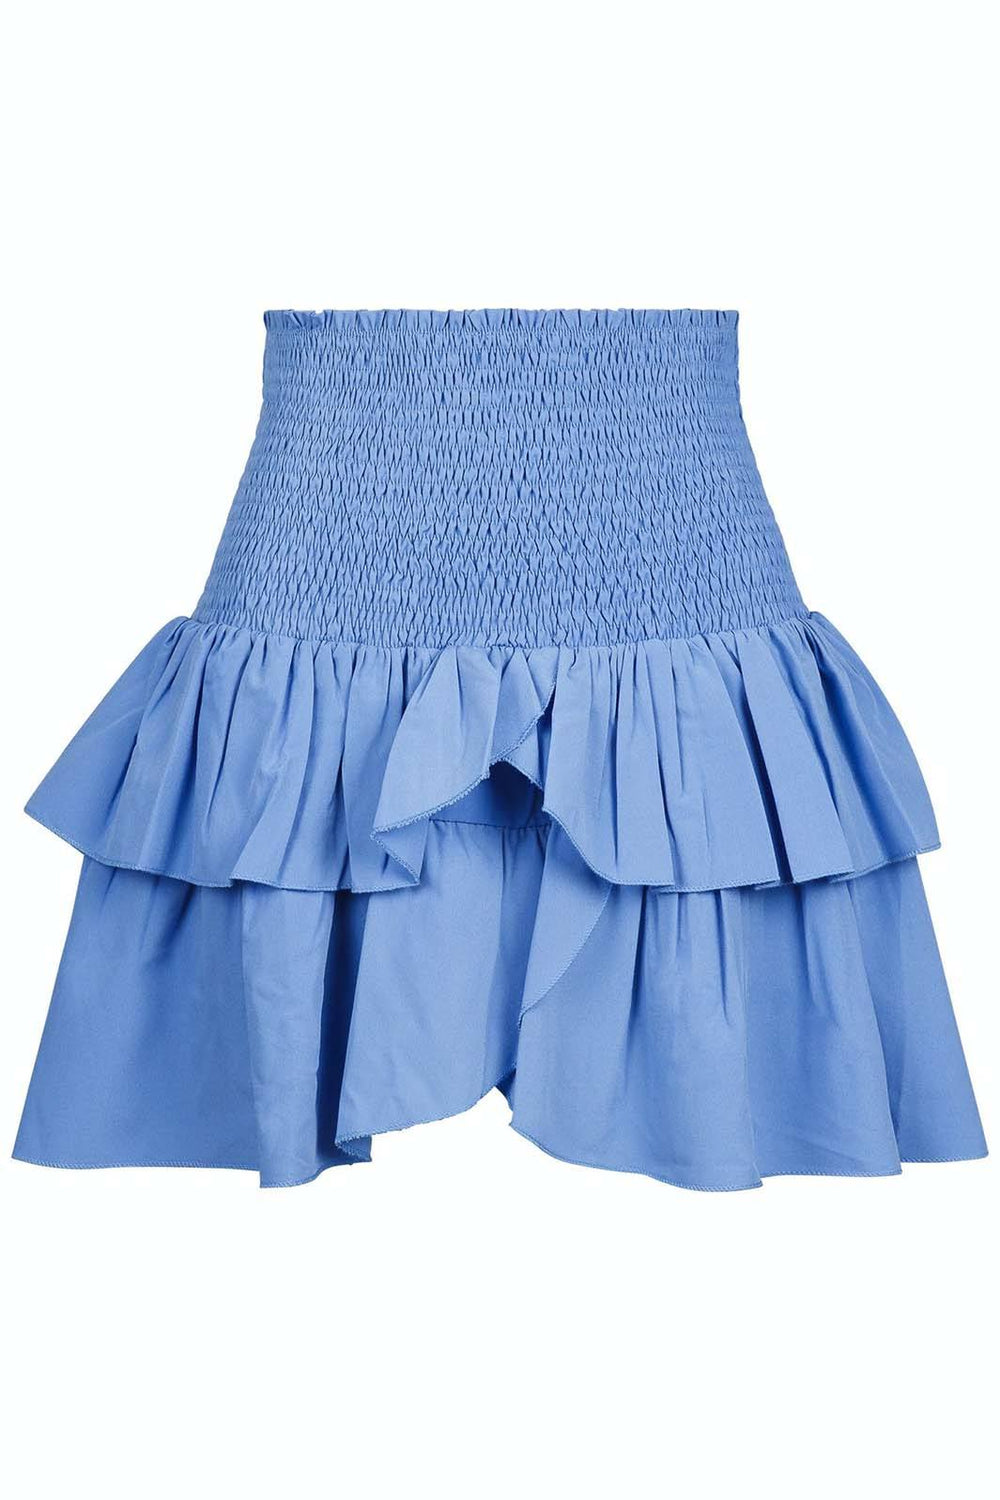 Neo Noir - Carin R Skirt - Blue Nederdele 